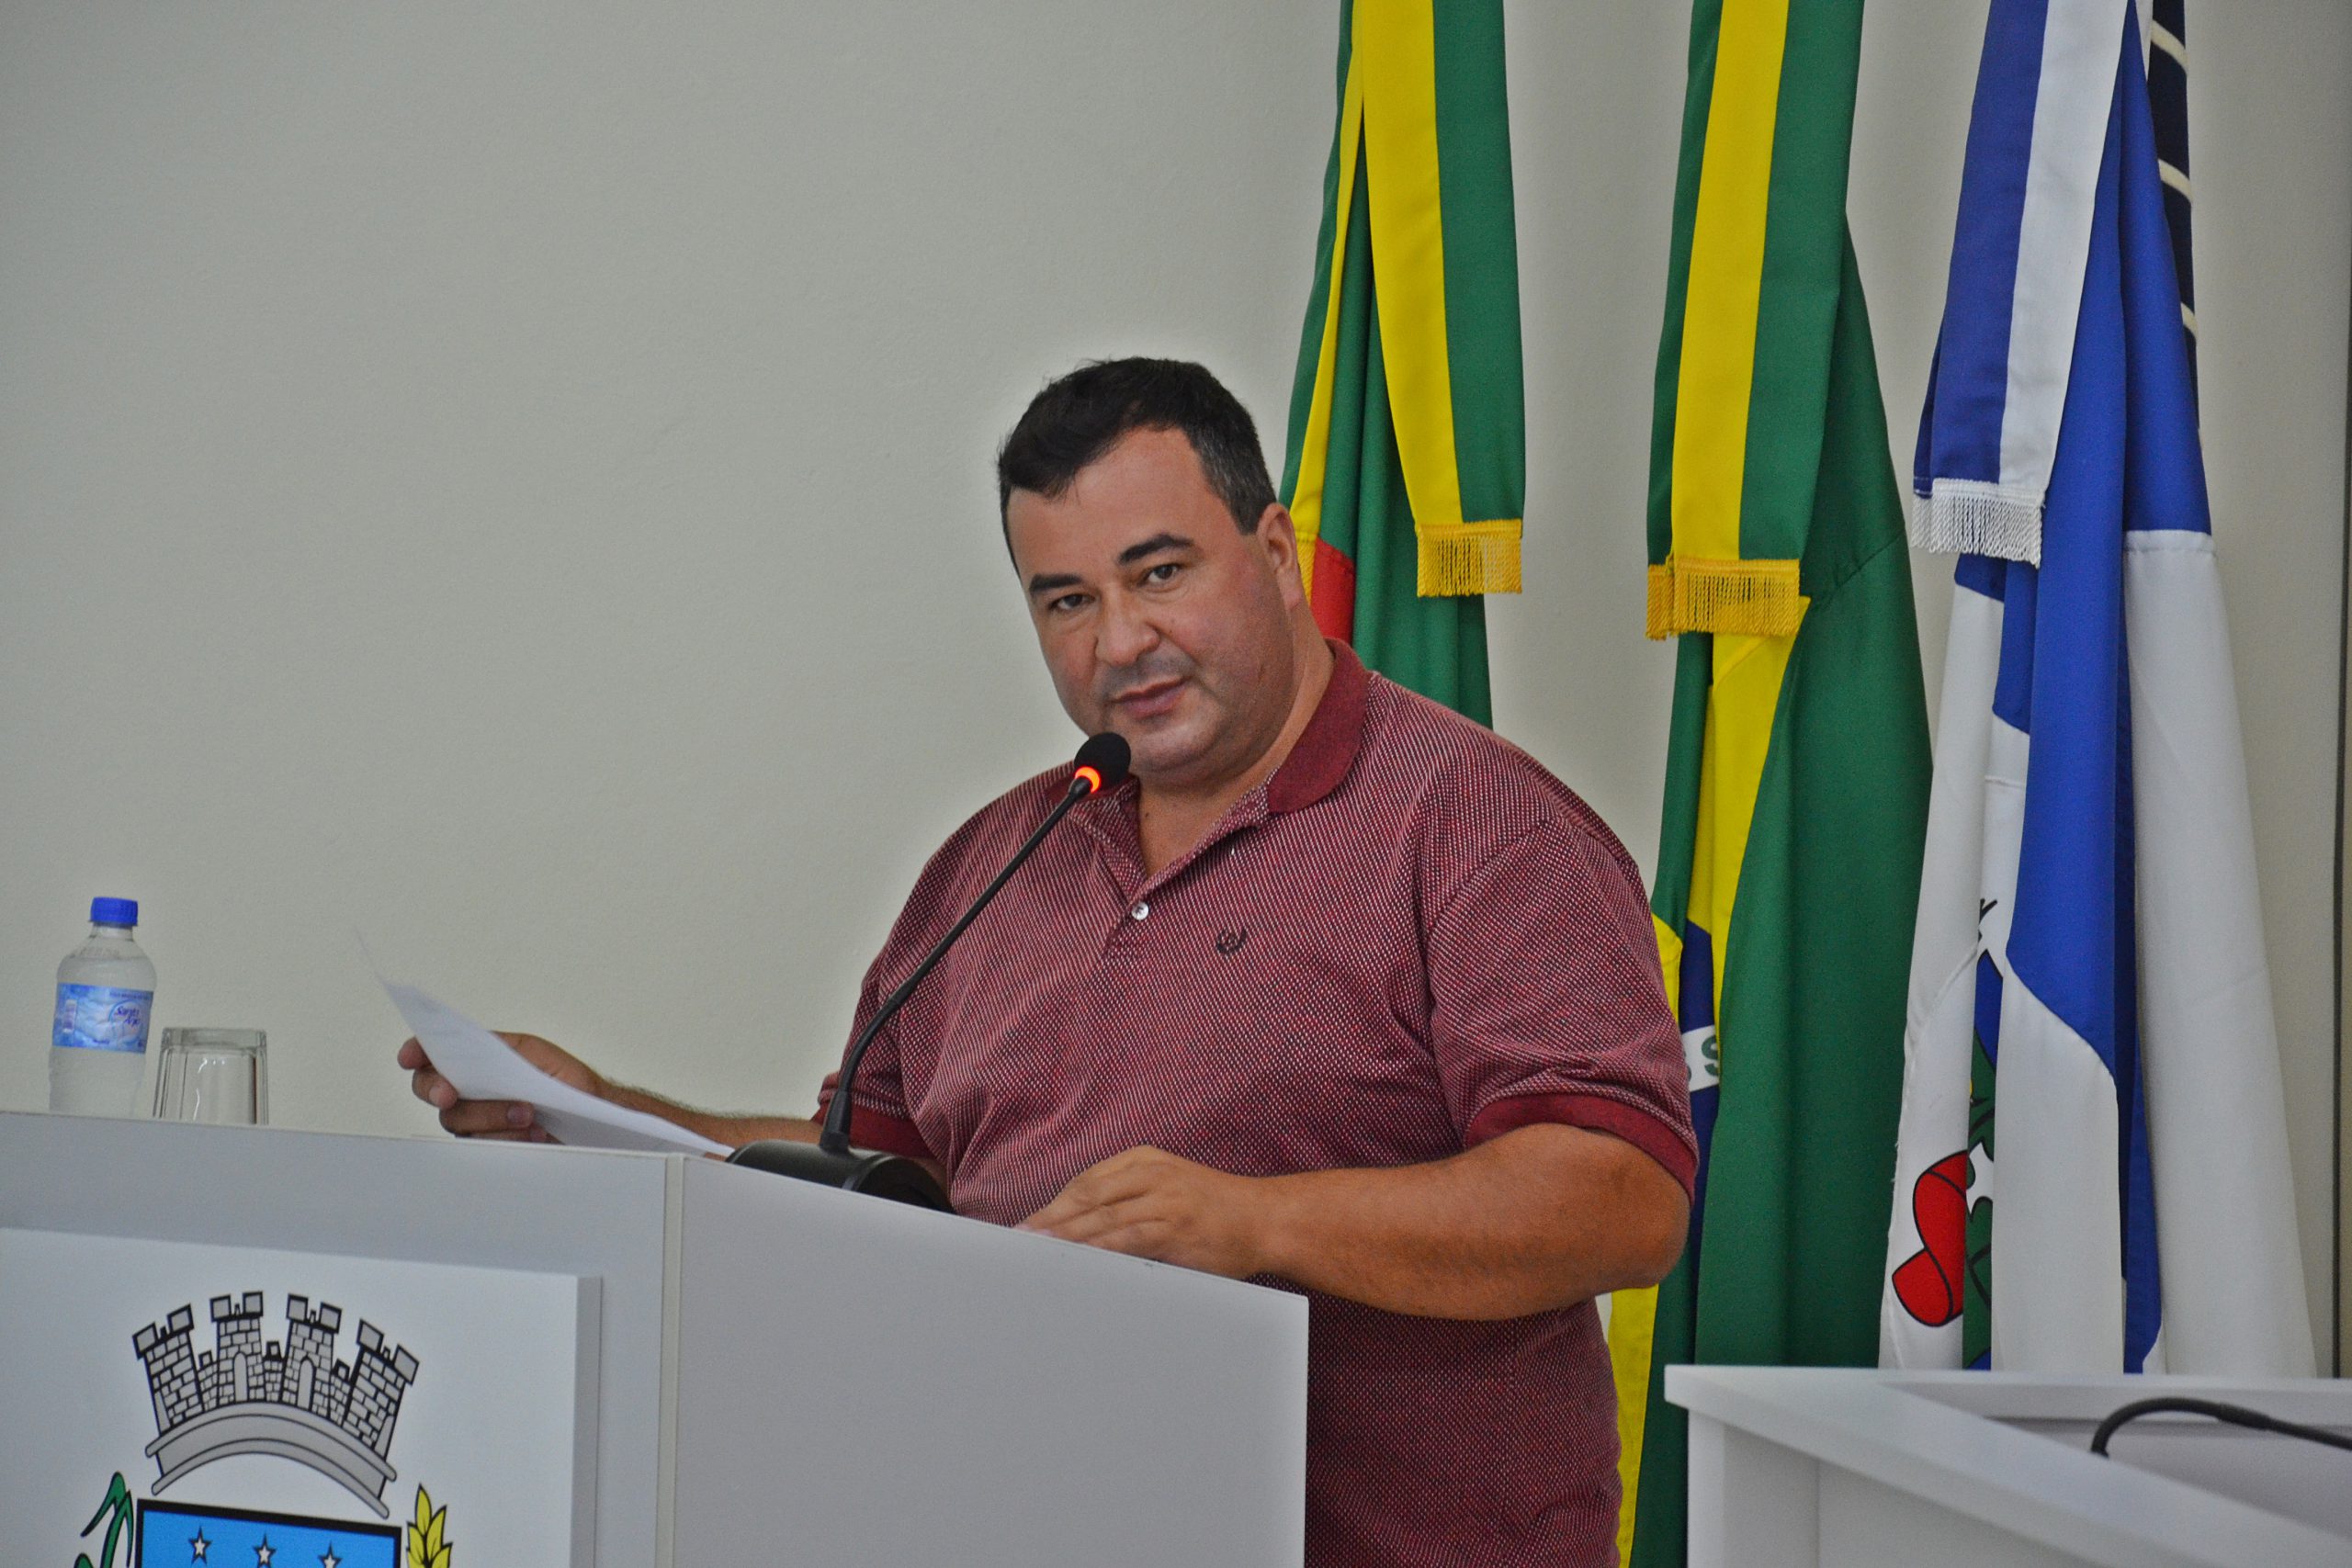 Bacana denuncia mau atendimento nas agências bancárias em Santo Antônio